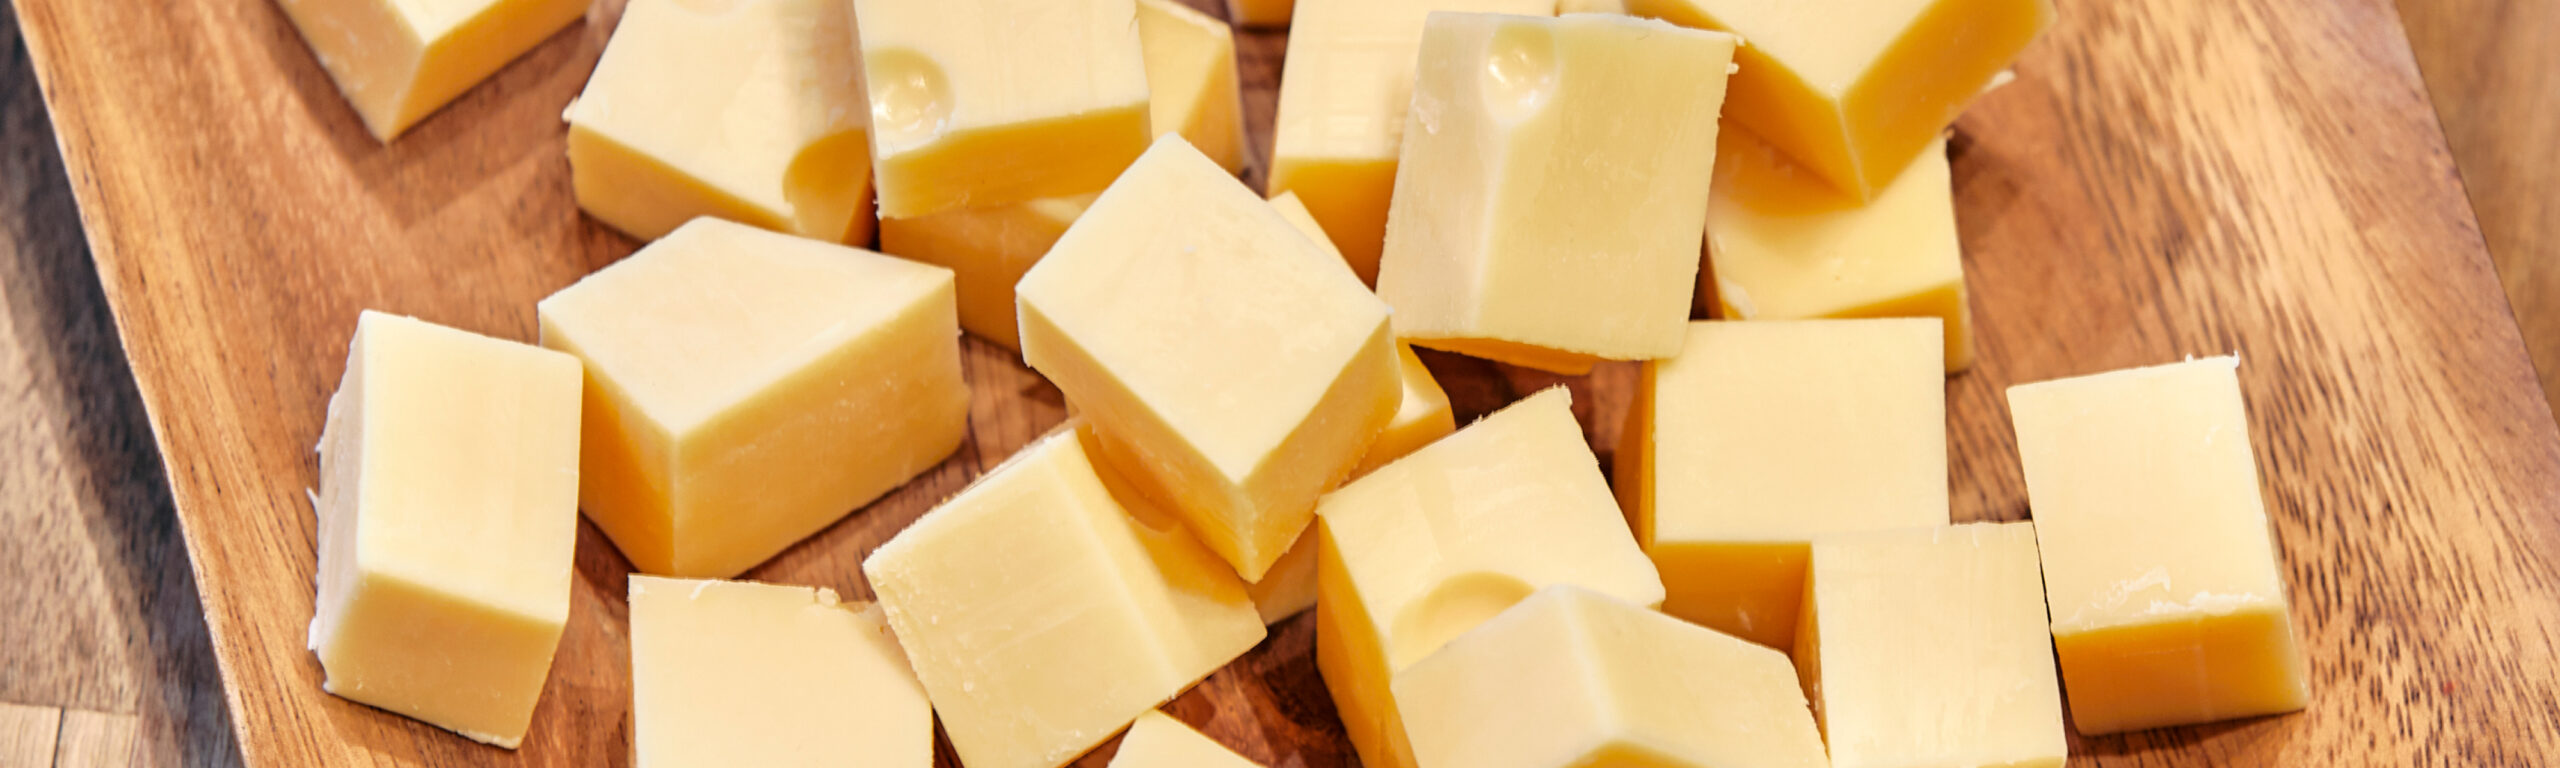 Waarom is kaas geel?